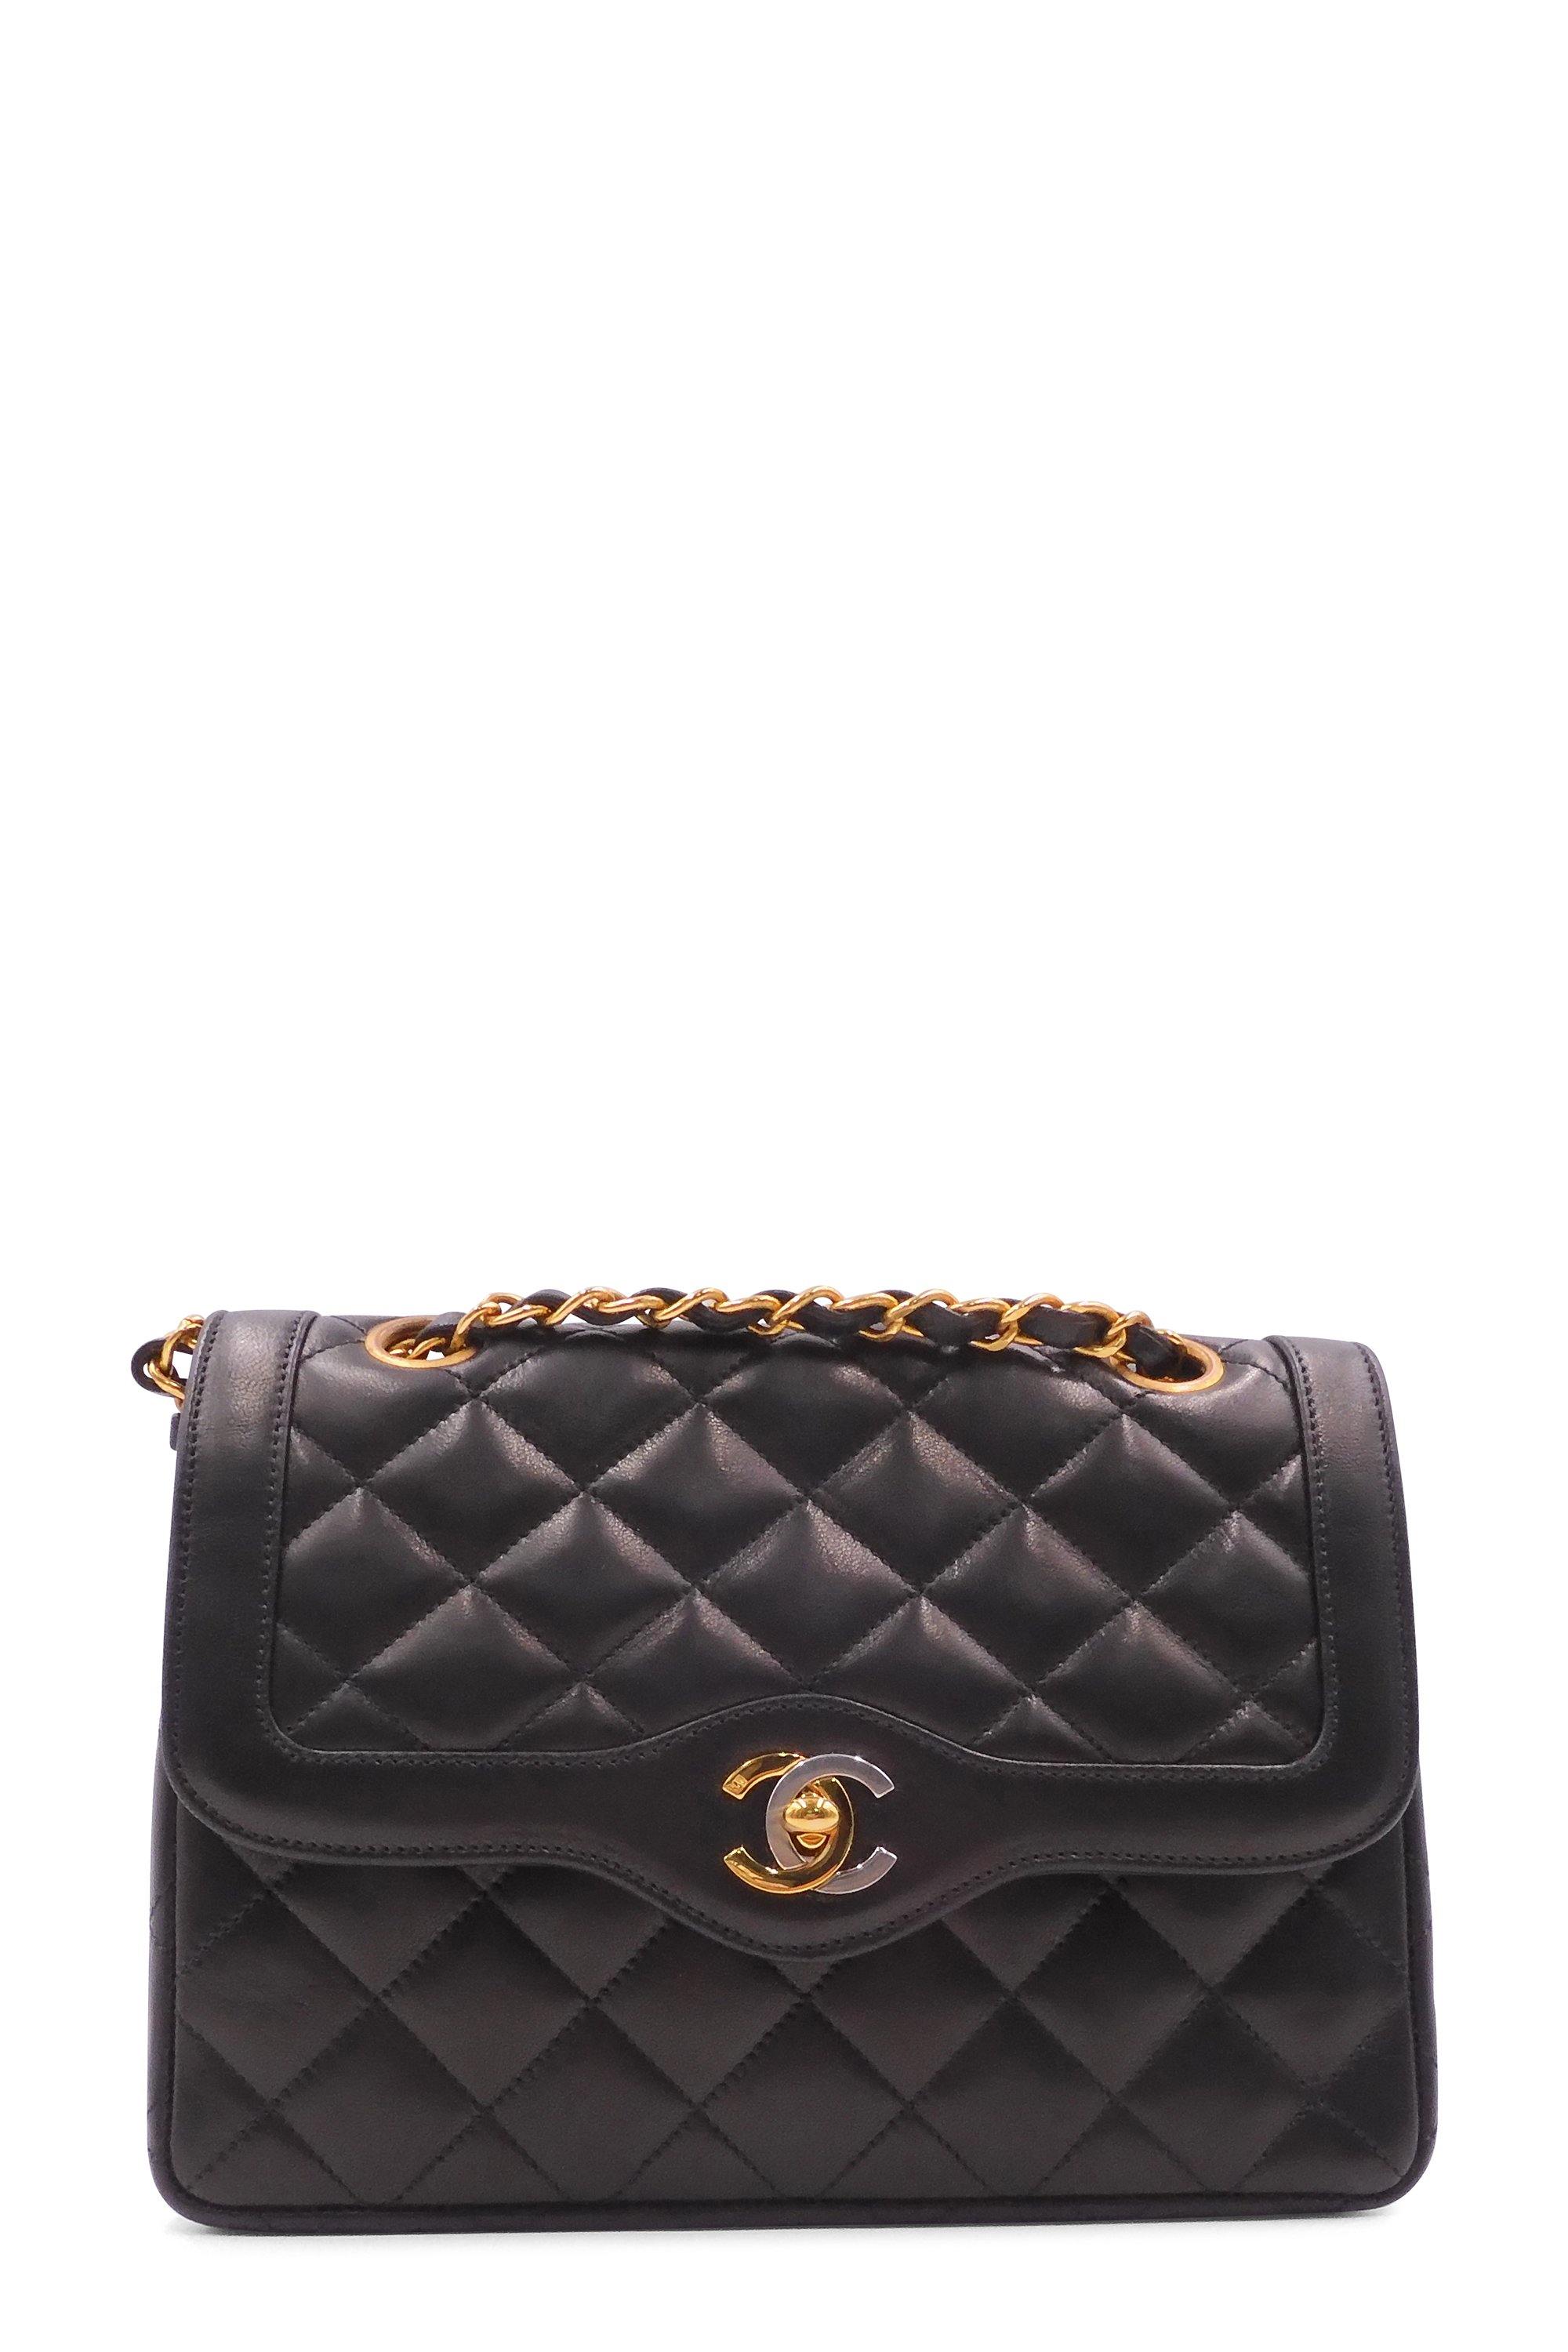 Buy Authentic, Preloved Chanel Vintage Paris Double Flap Bag Black